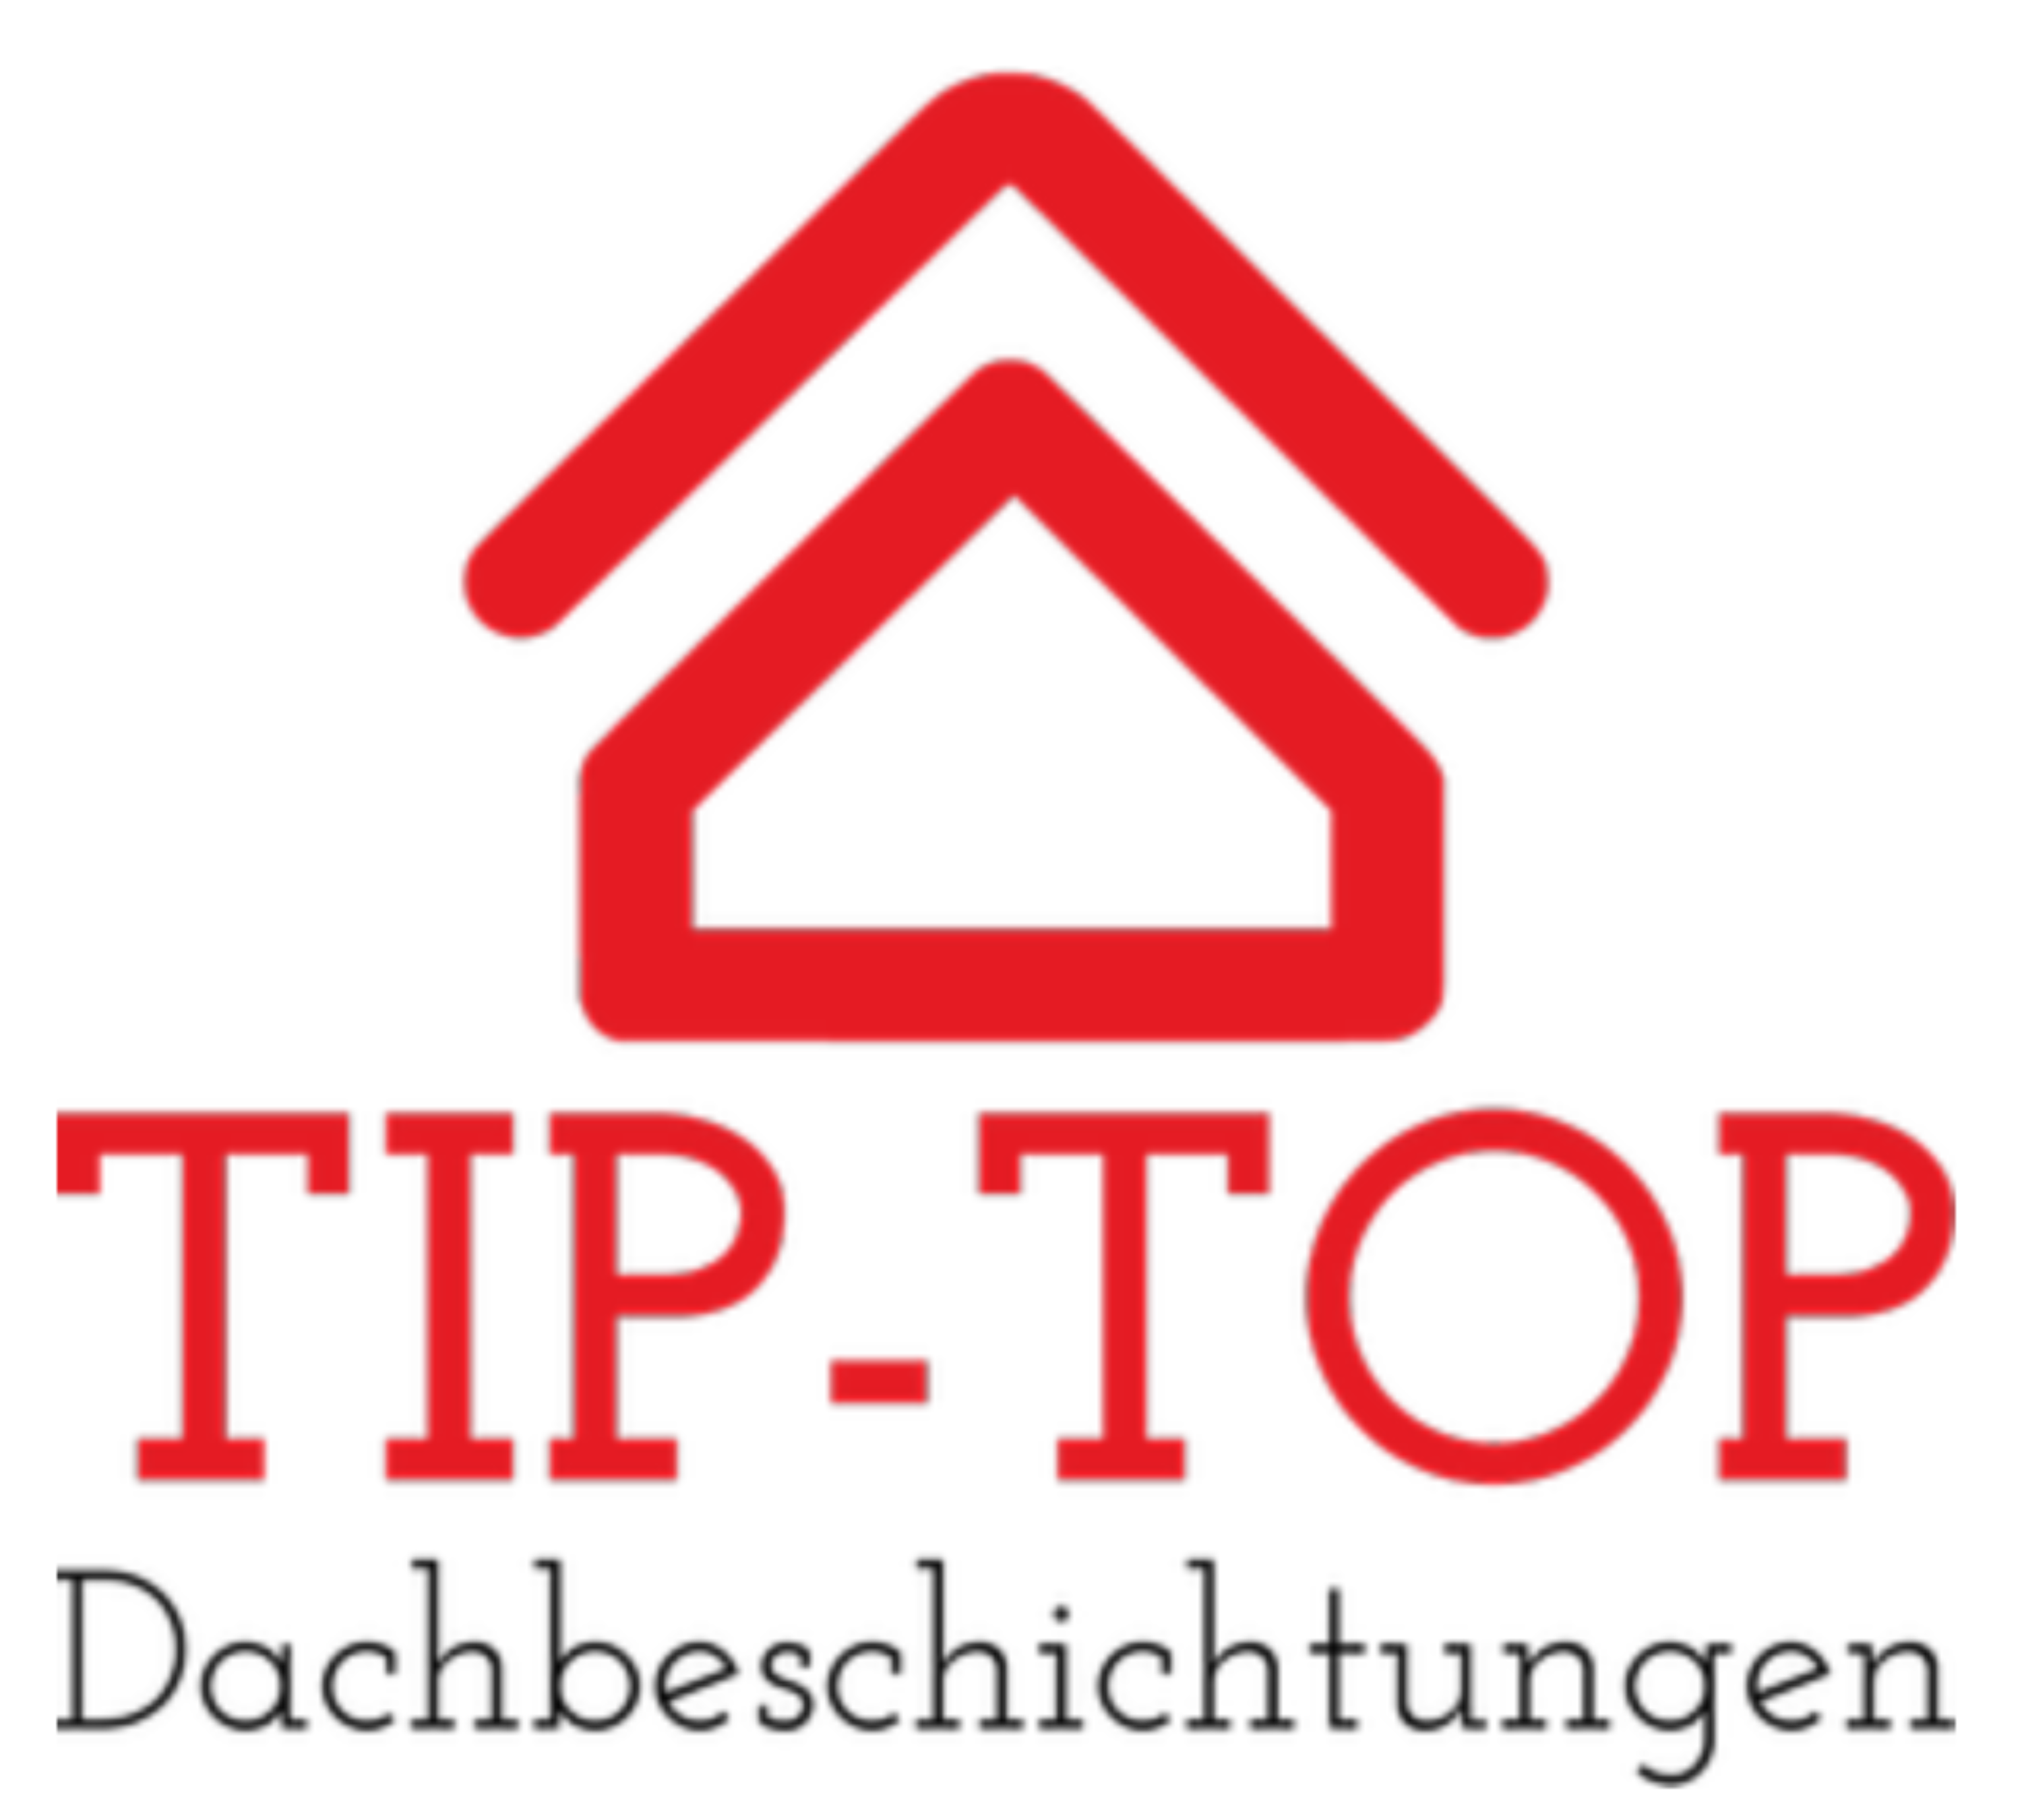 Tip-Top Dachbeschichtungen